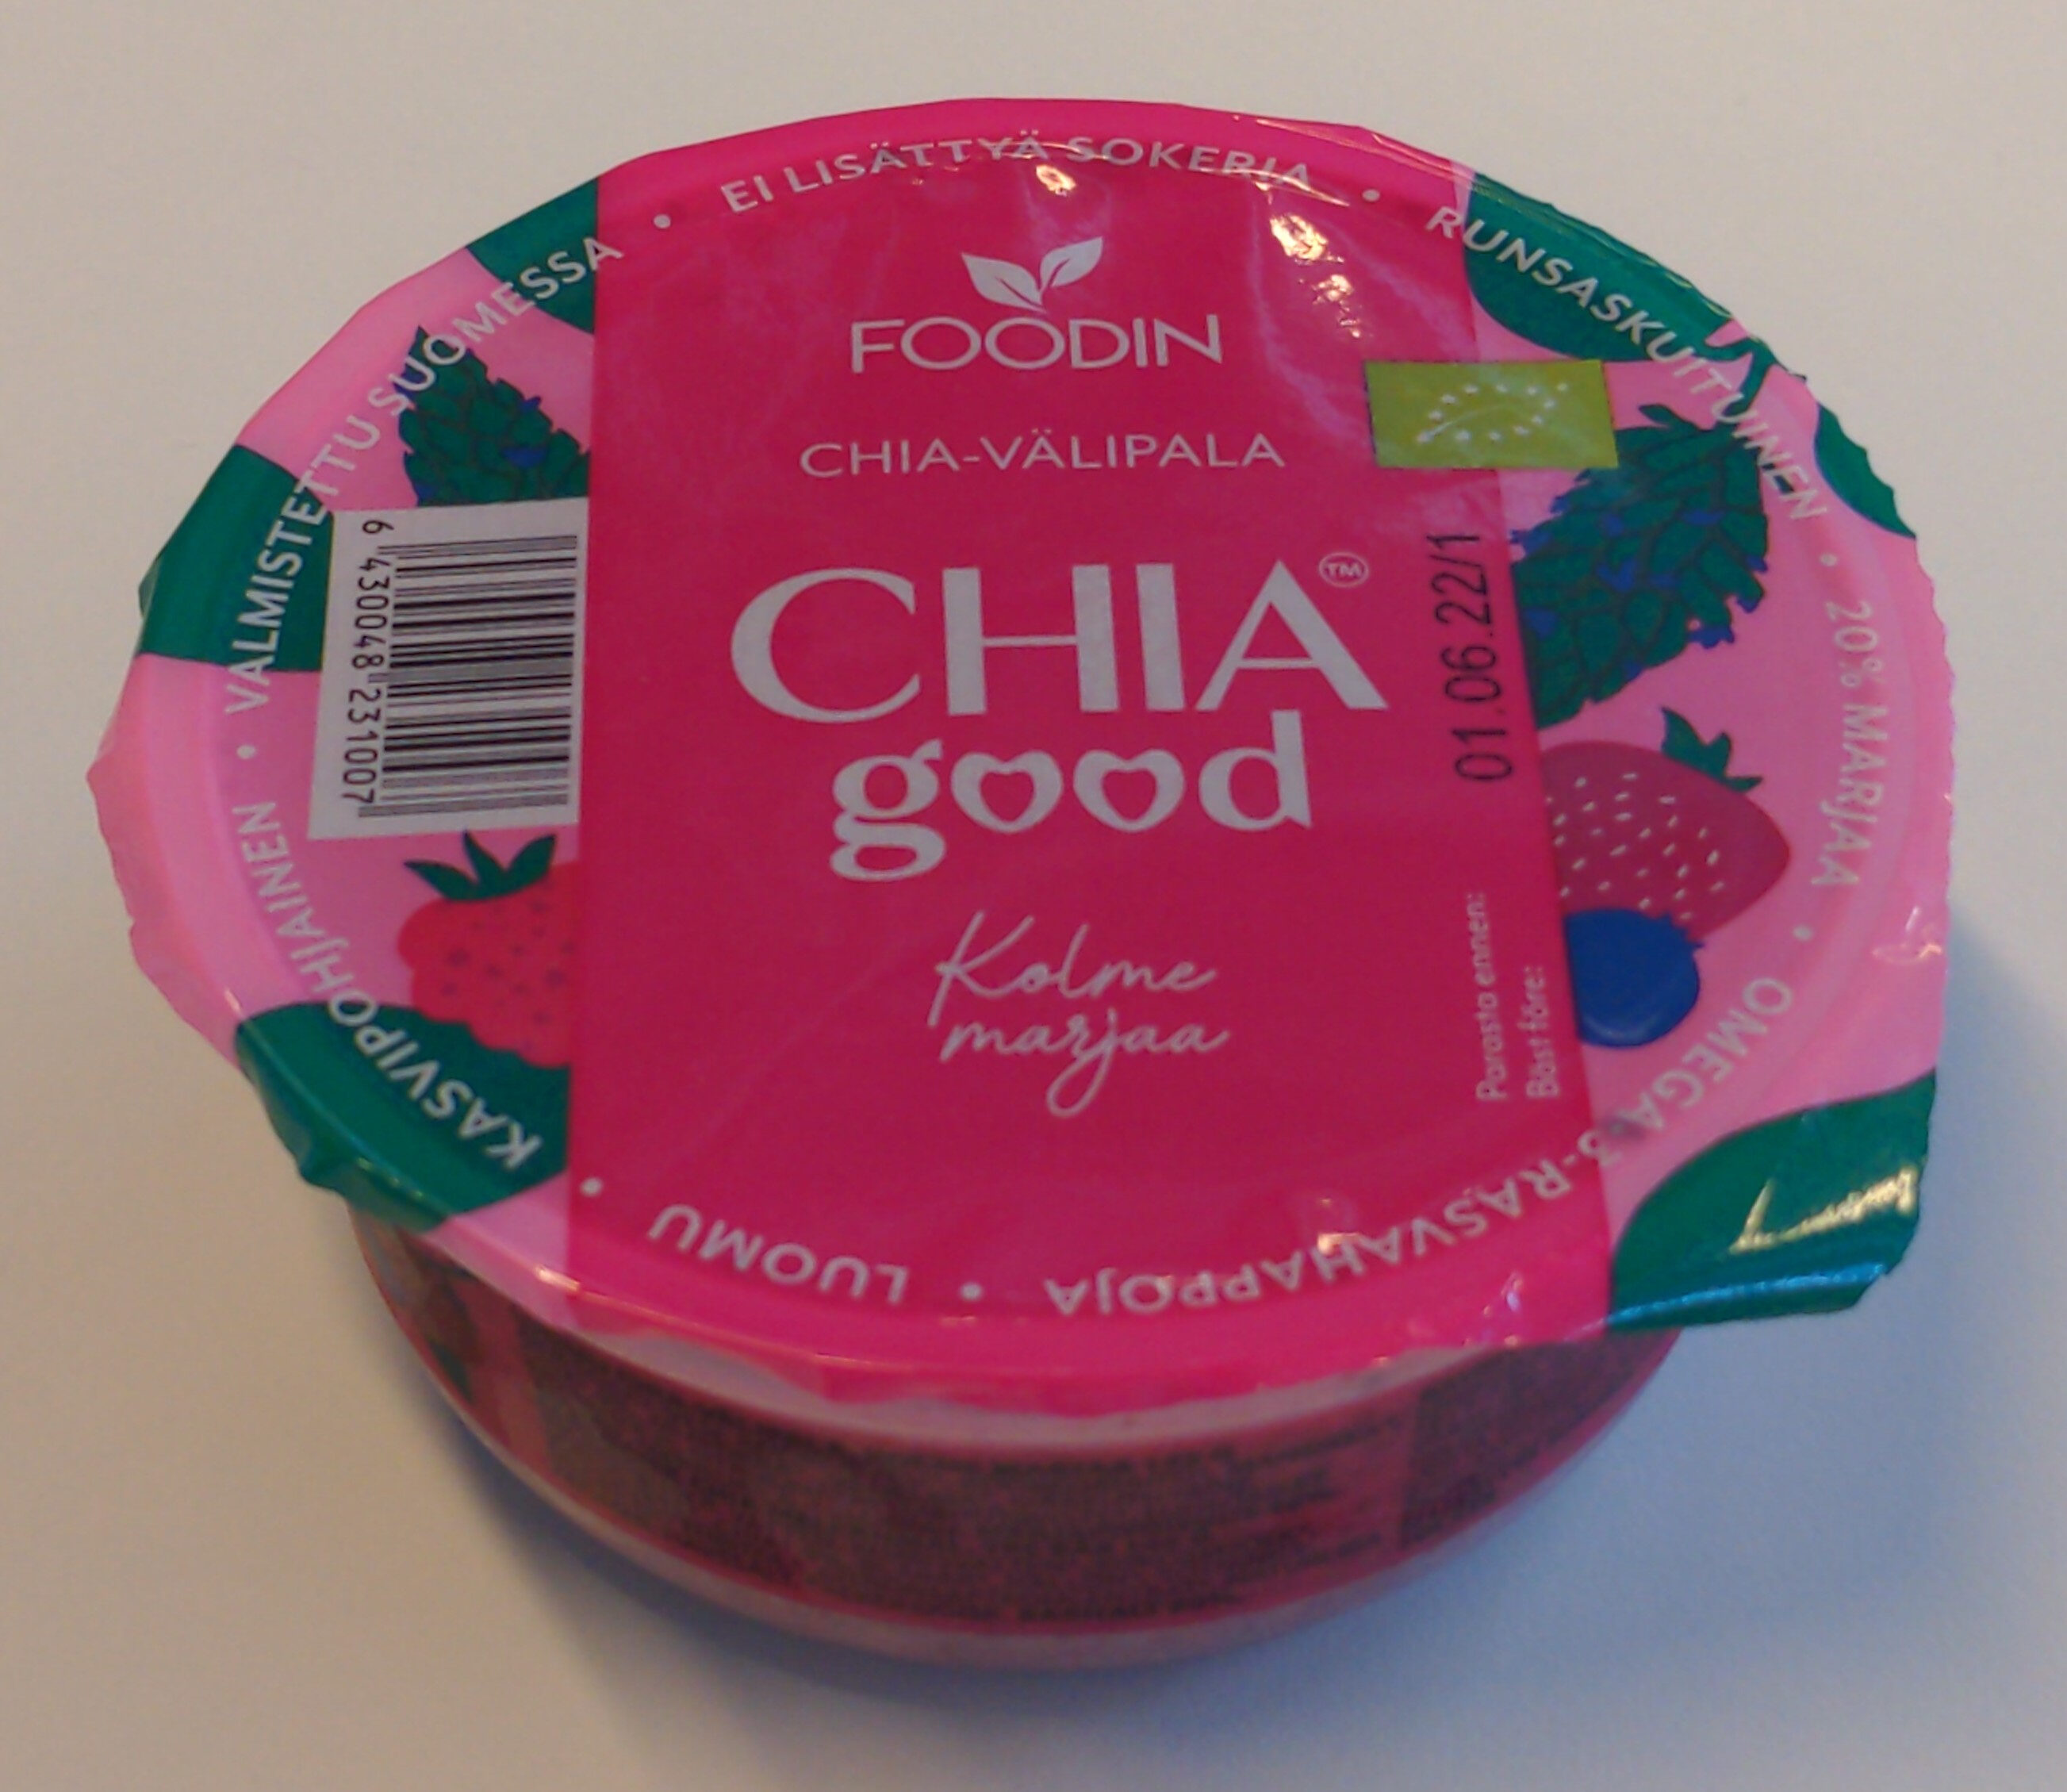 Chia good kolme marjaa - Product - fi